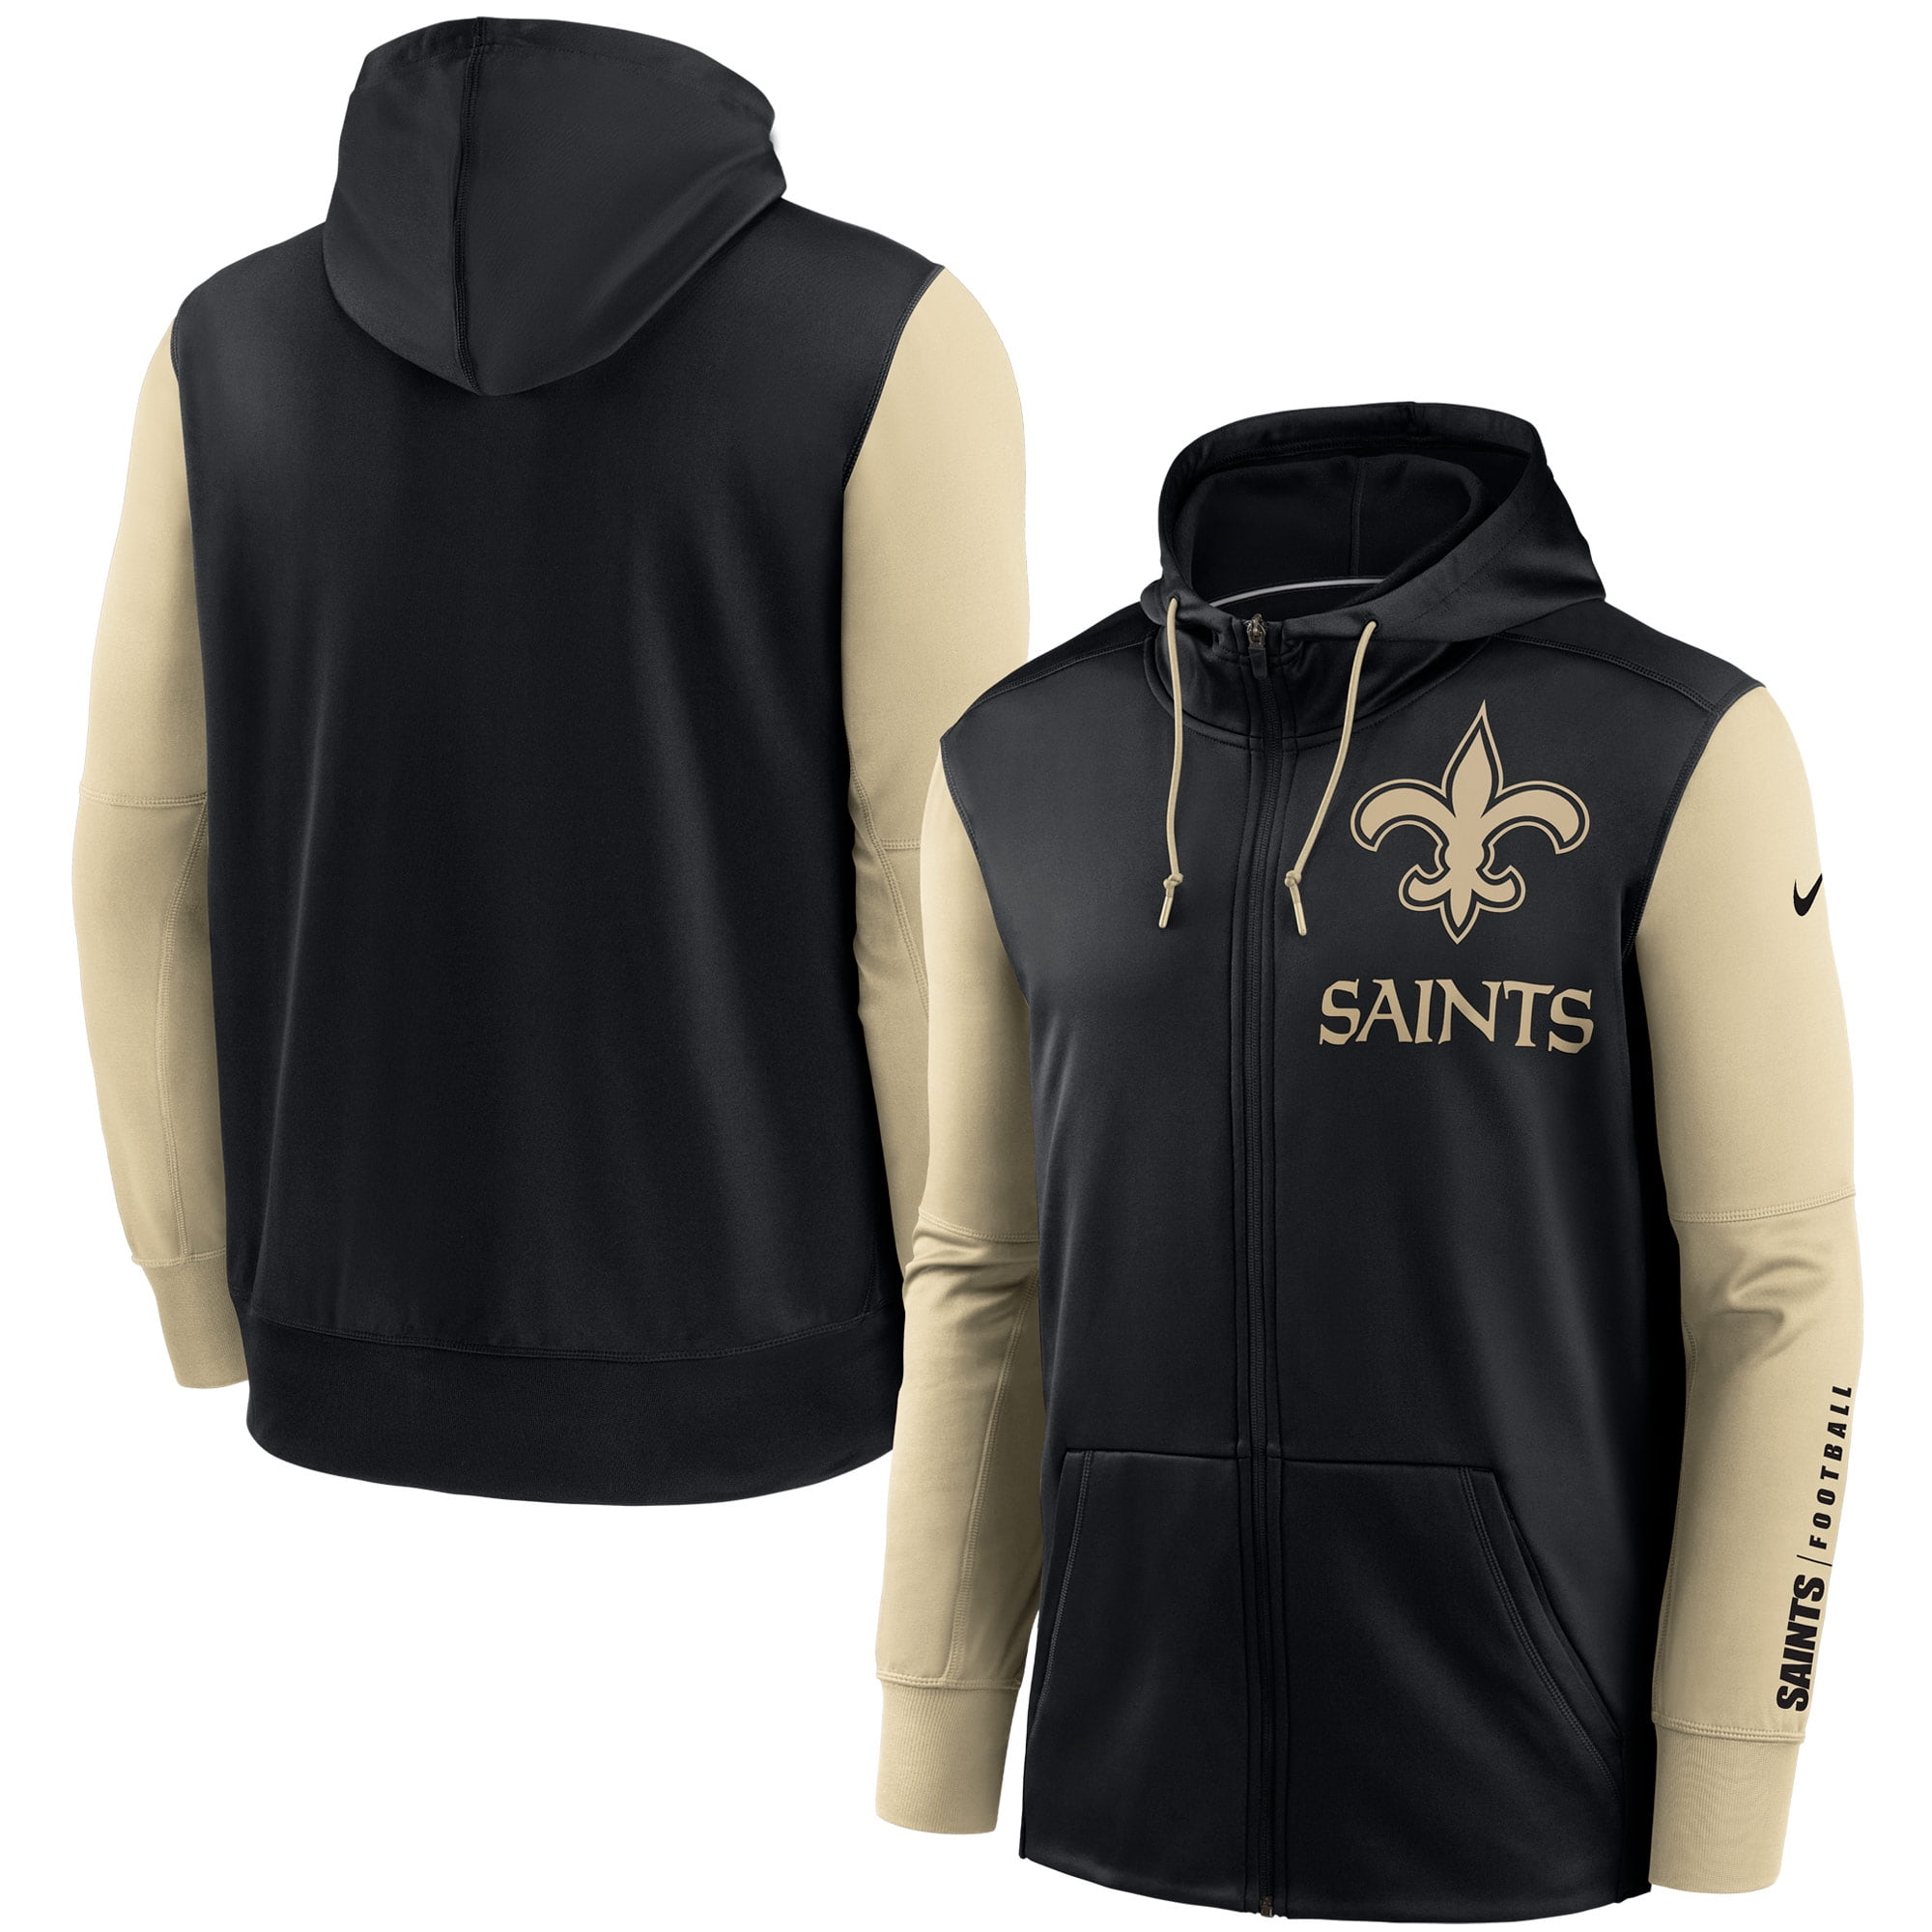 nike new orleans saints hoodie